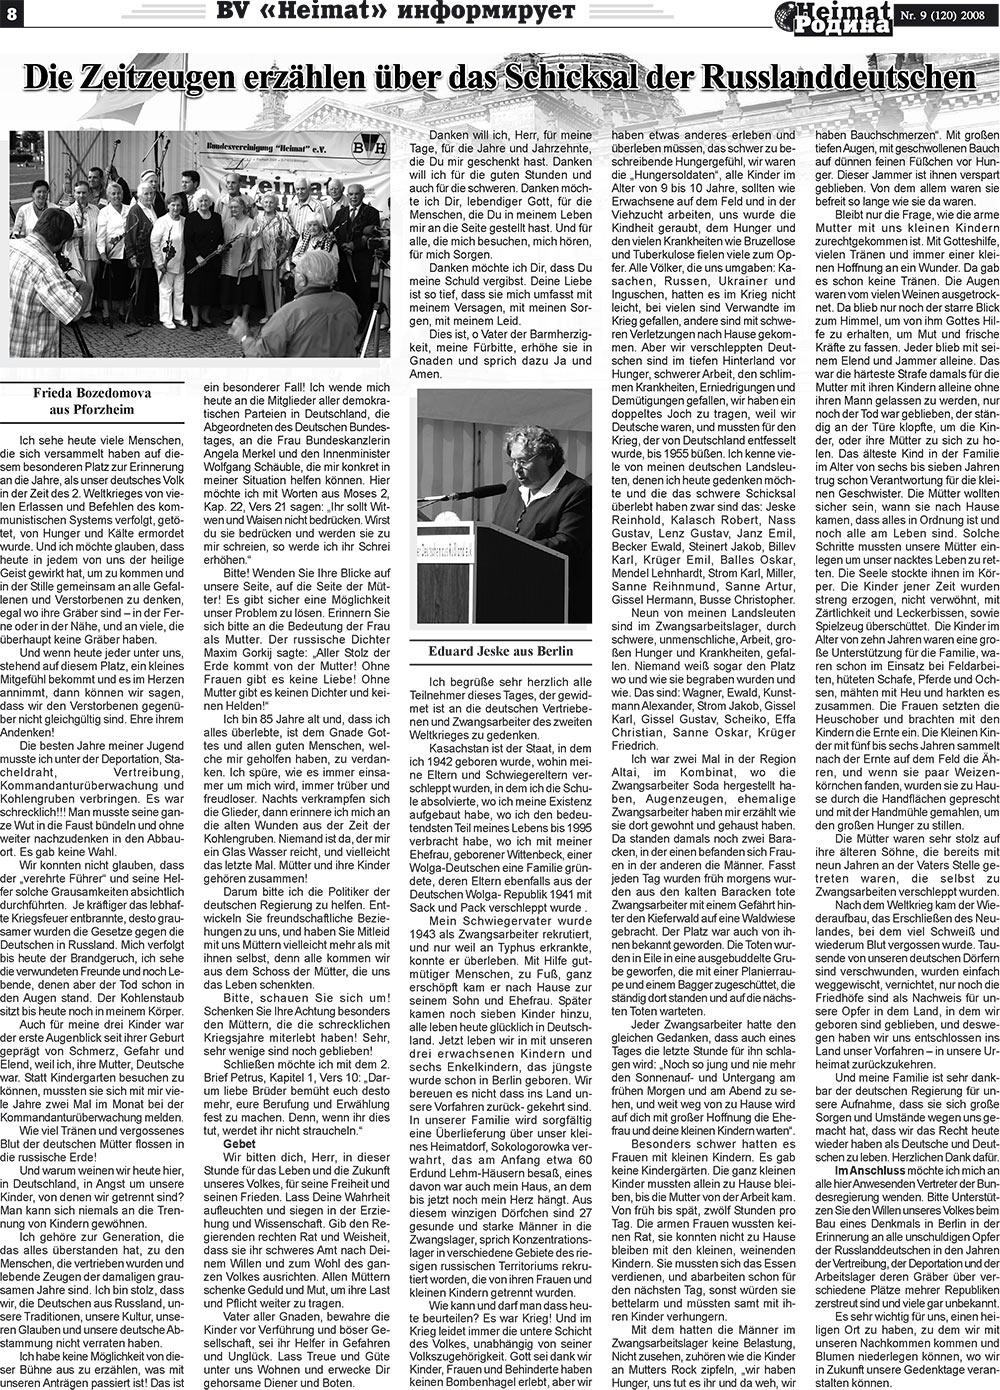 Heimat-Родина (Zeitung). 2008 Jahr, Ausgabe 9, Seite 8